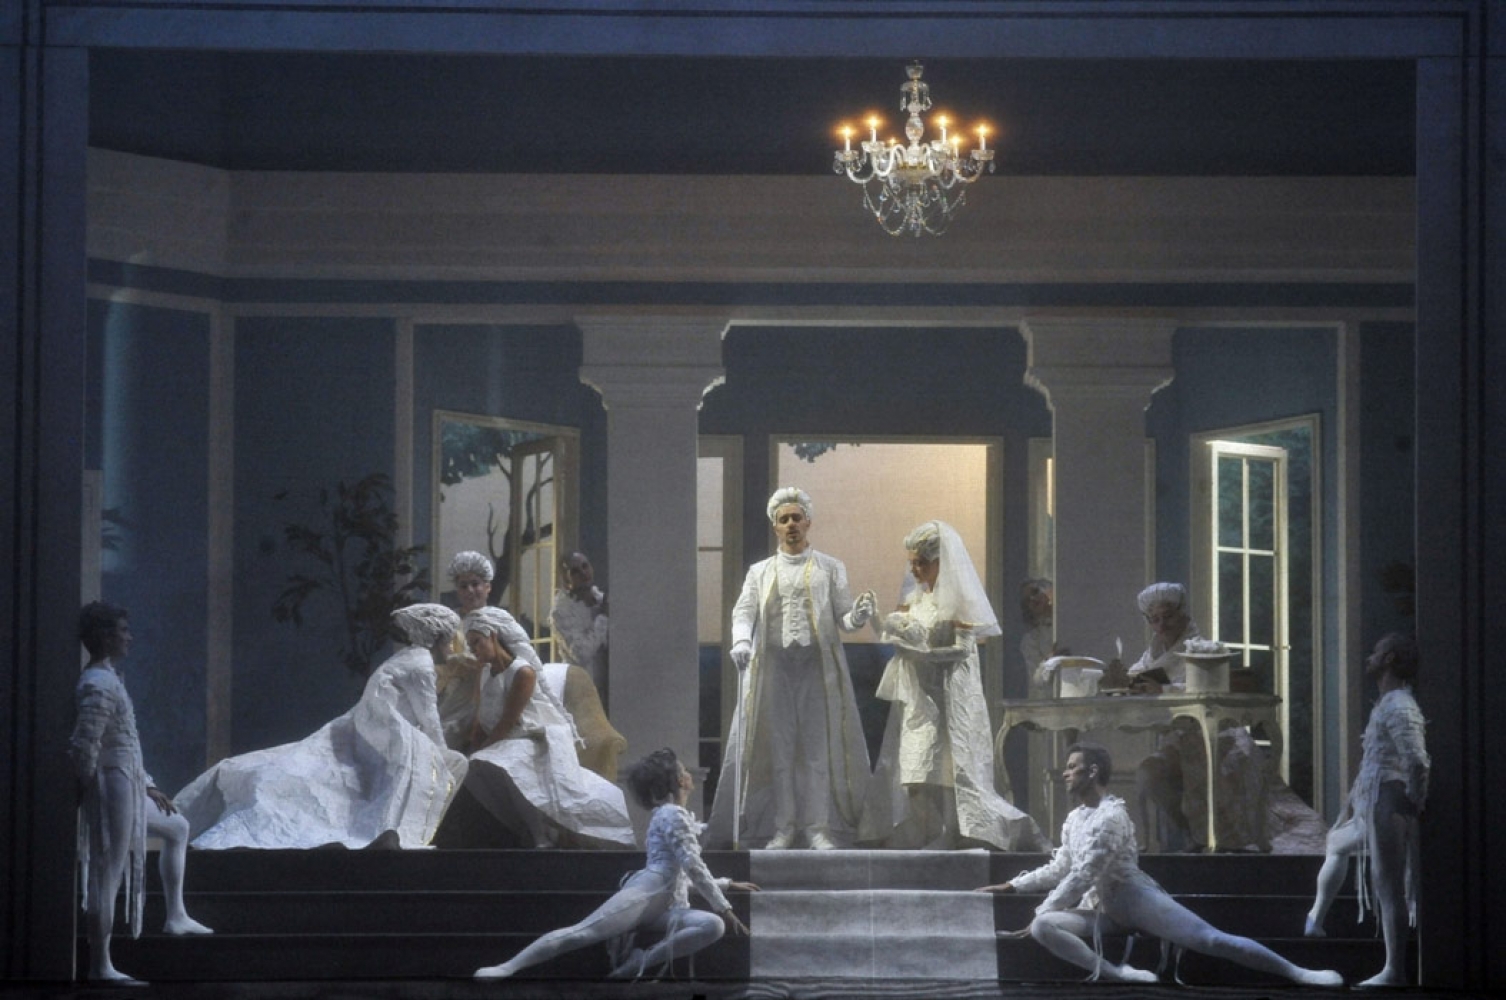 “L’occasione fa il ladro” by Gioachino Rossini at La Fenice Theatre